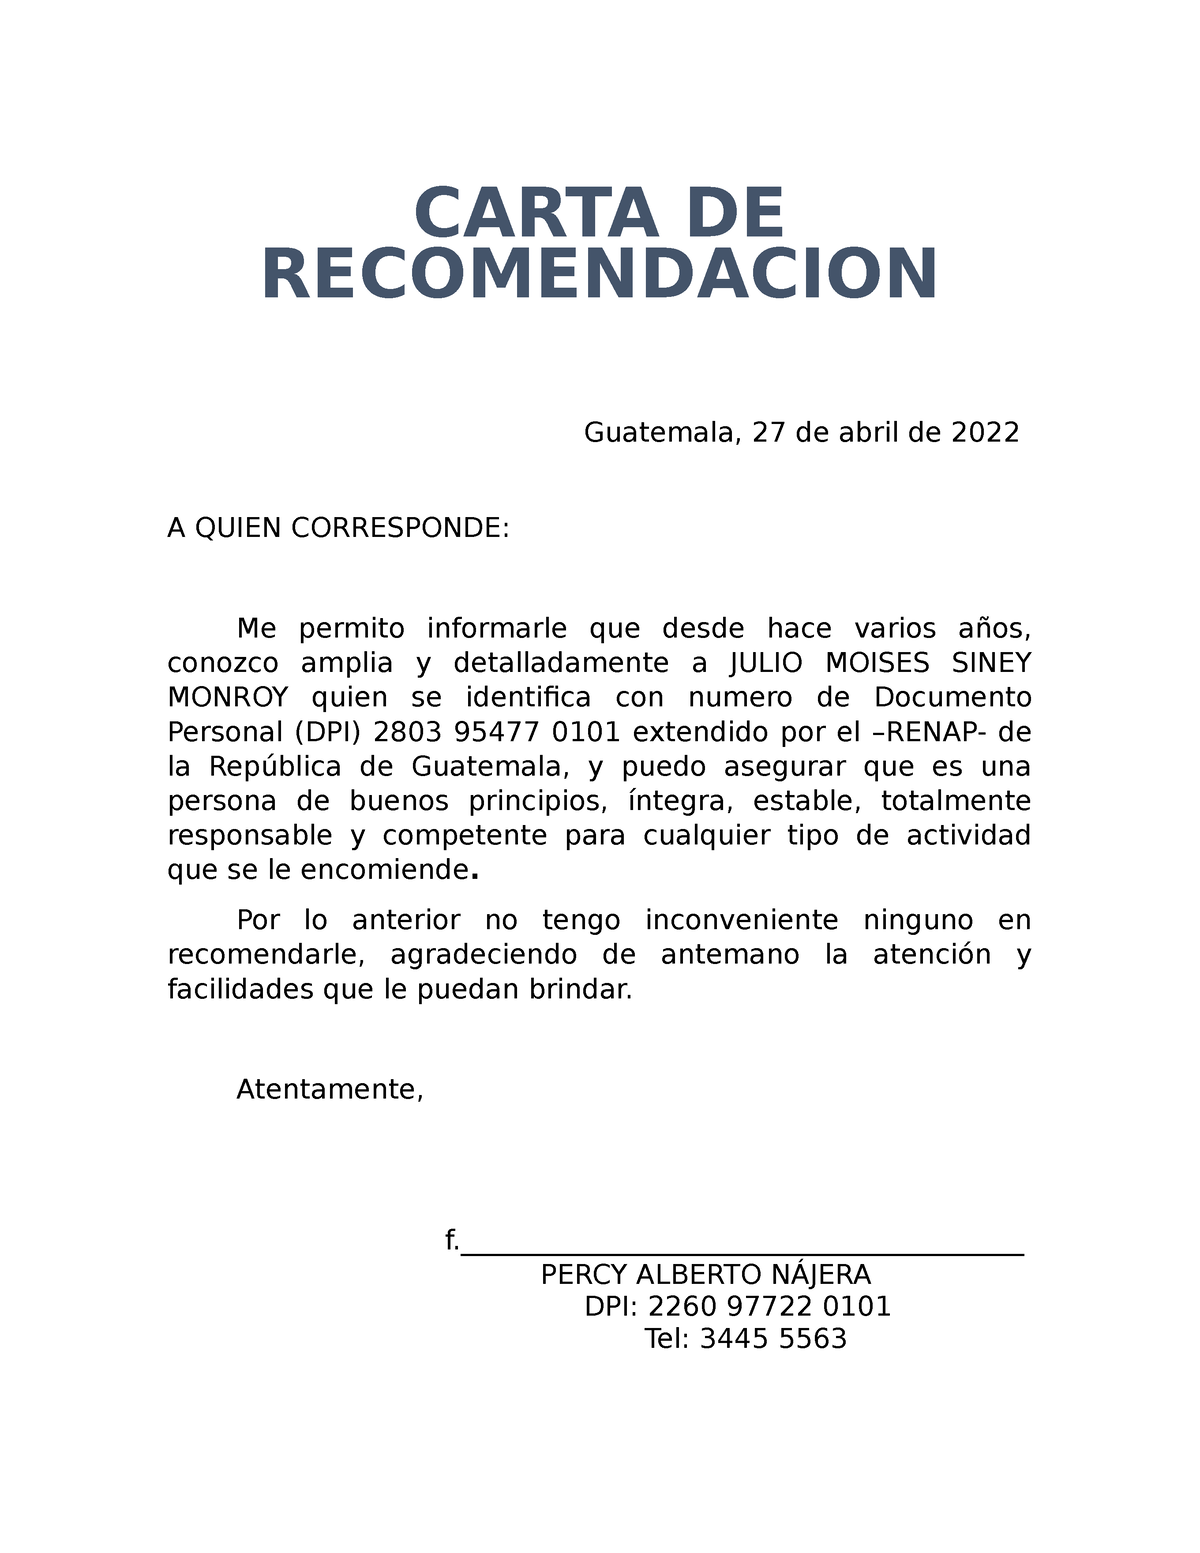 MODELO CARTA DE RECOMENDACION PERSONAL Y REFERENCIA. - CARTA DE  RECOMENDACION Guatemala, 27 de abril - Studocu